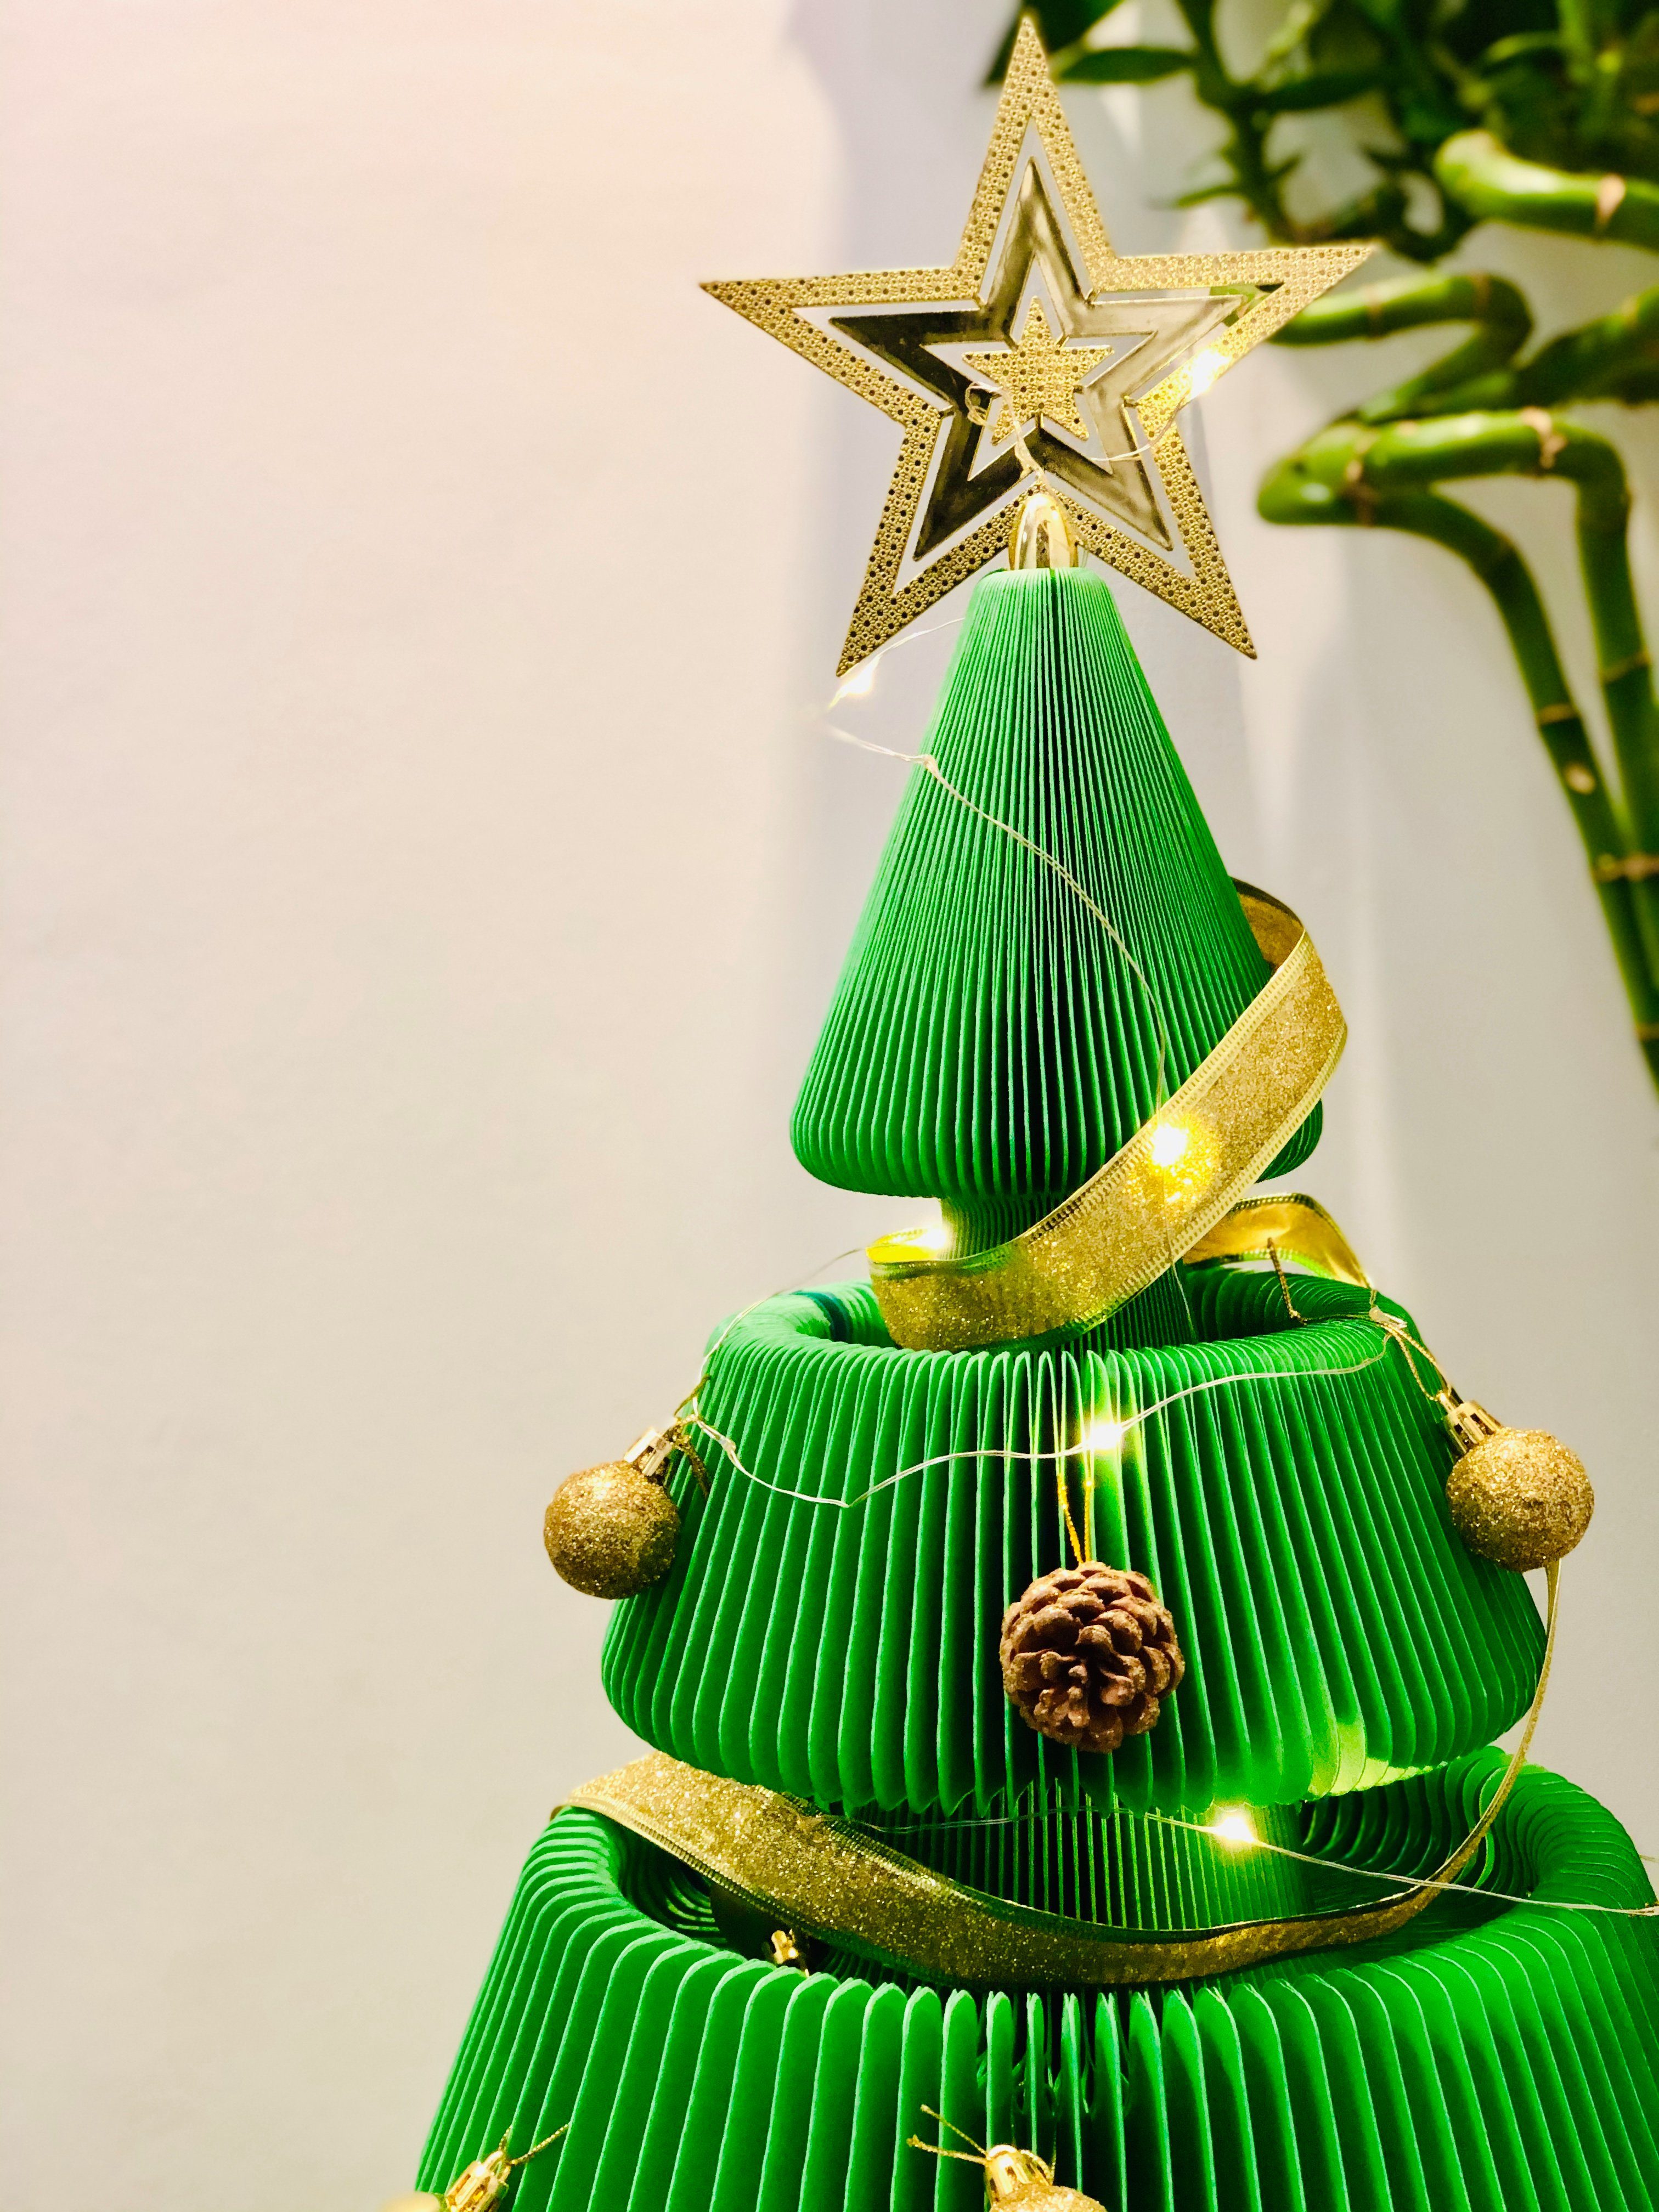 ih Papp Waben Struktur Design, Pappe Künstlicher paper Tannenbaum, Baum, verstauen Tanne, faltbar Rot & leicht Weihnachtsbaum zu